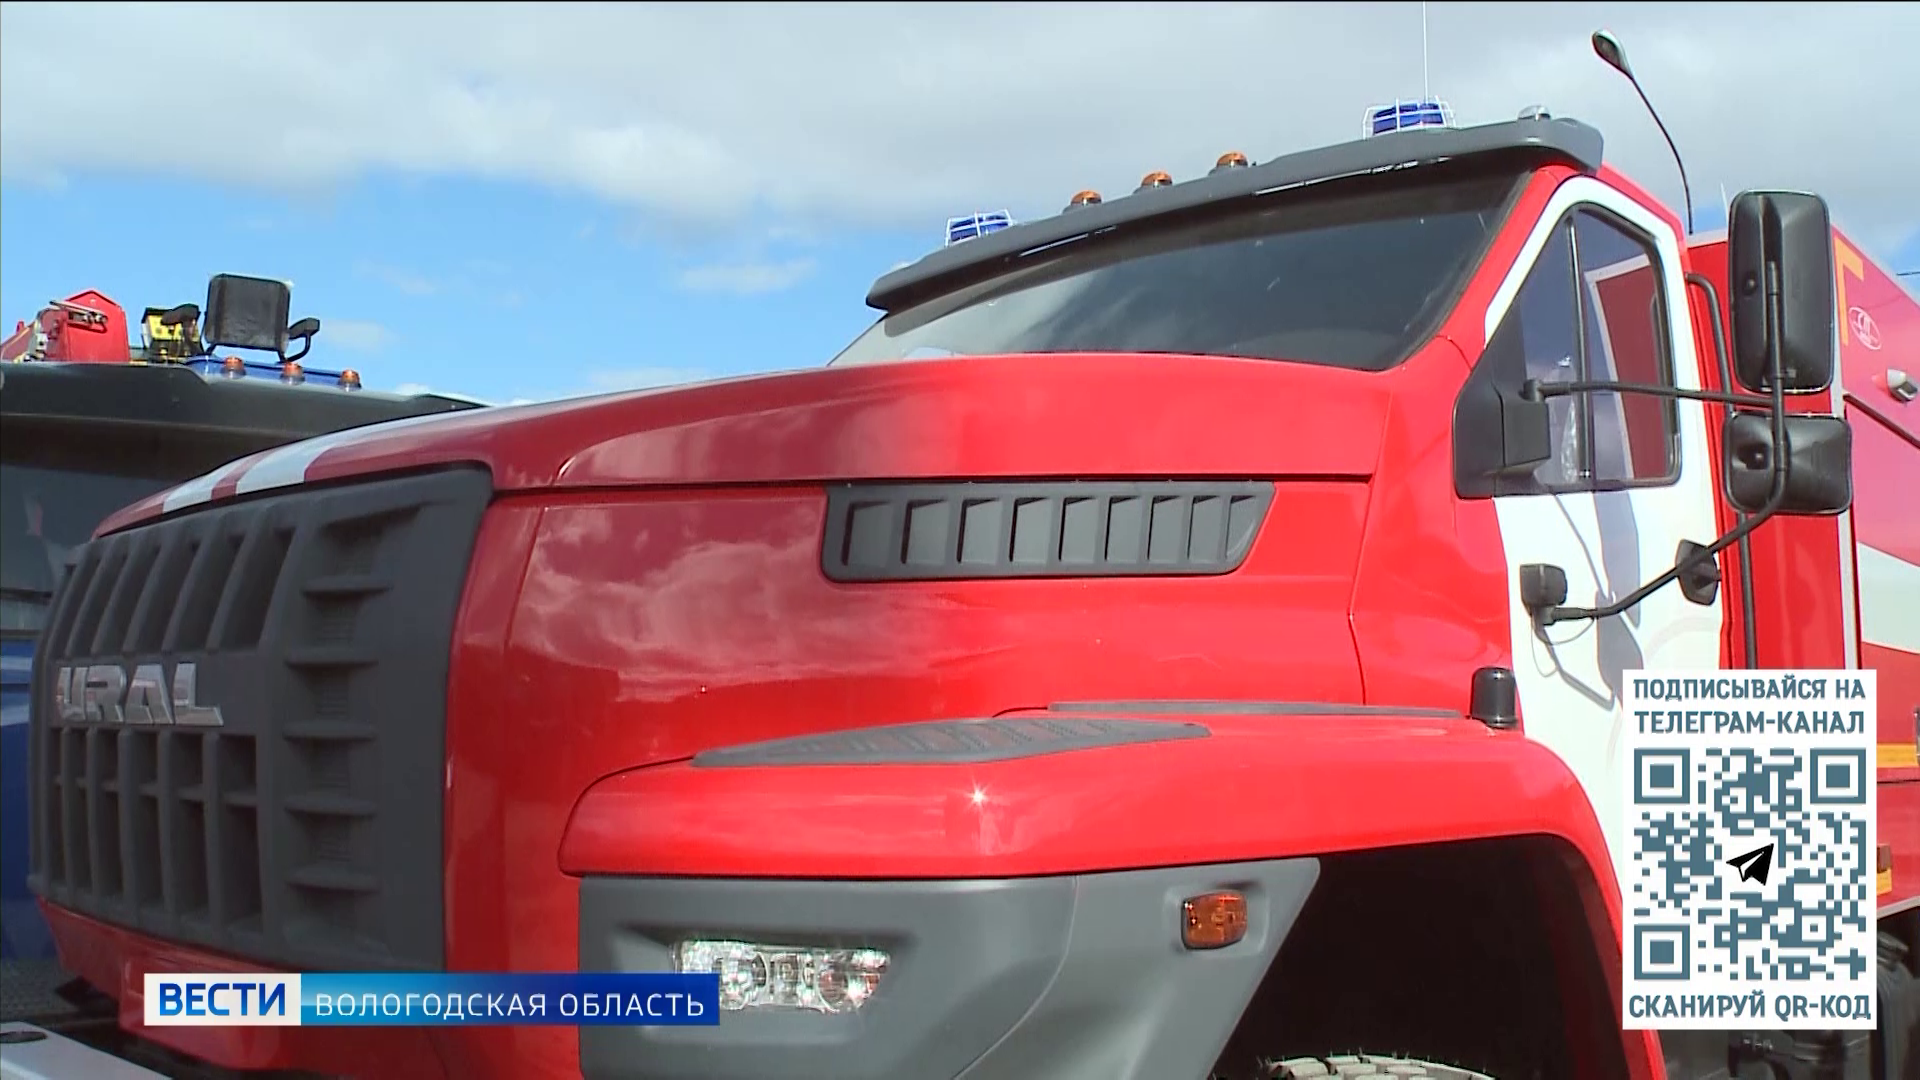 Новая партия пожарной спецтехники поступила в муниципалитеты Вологодской области